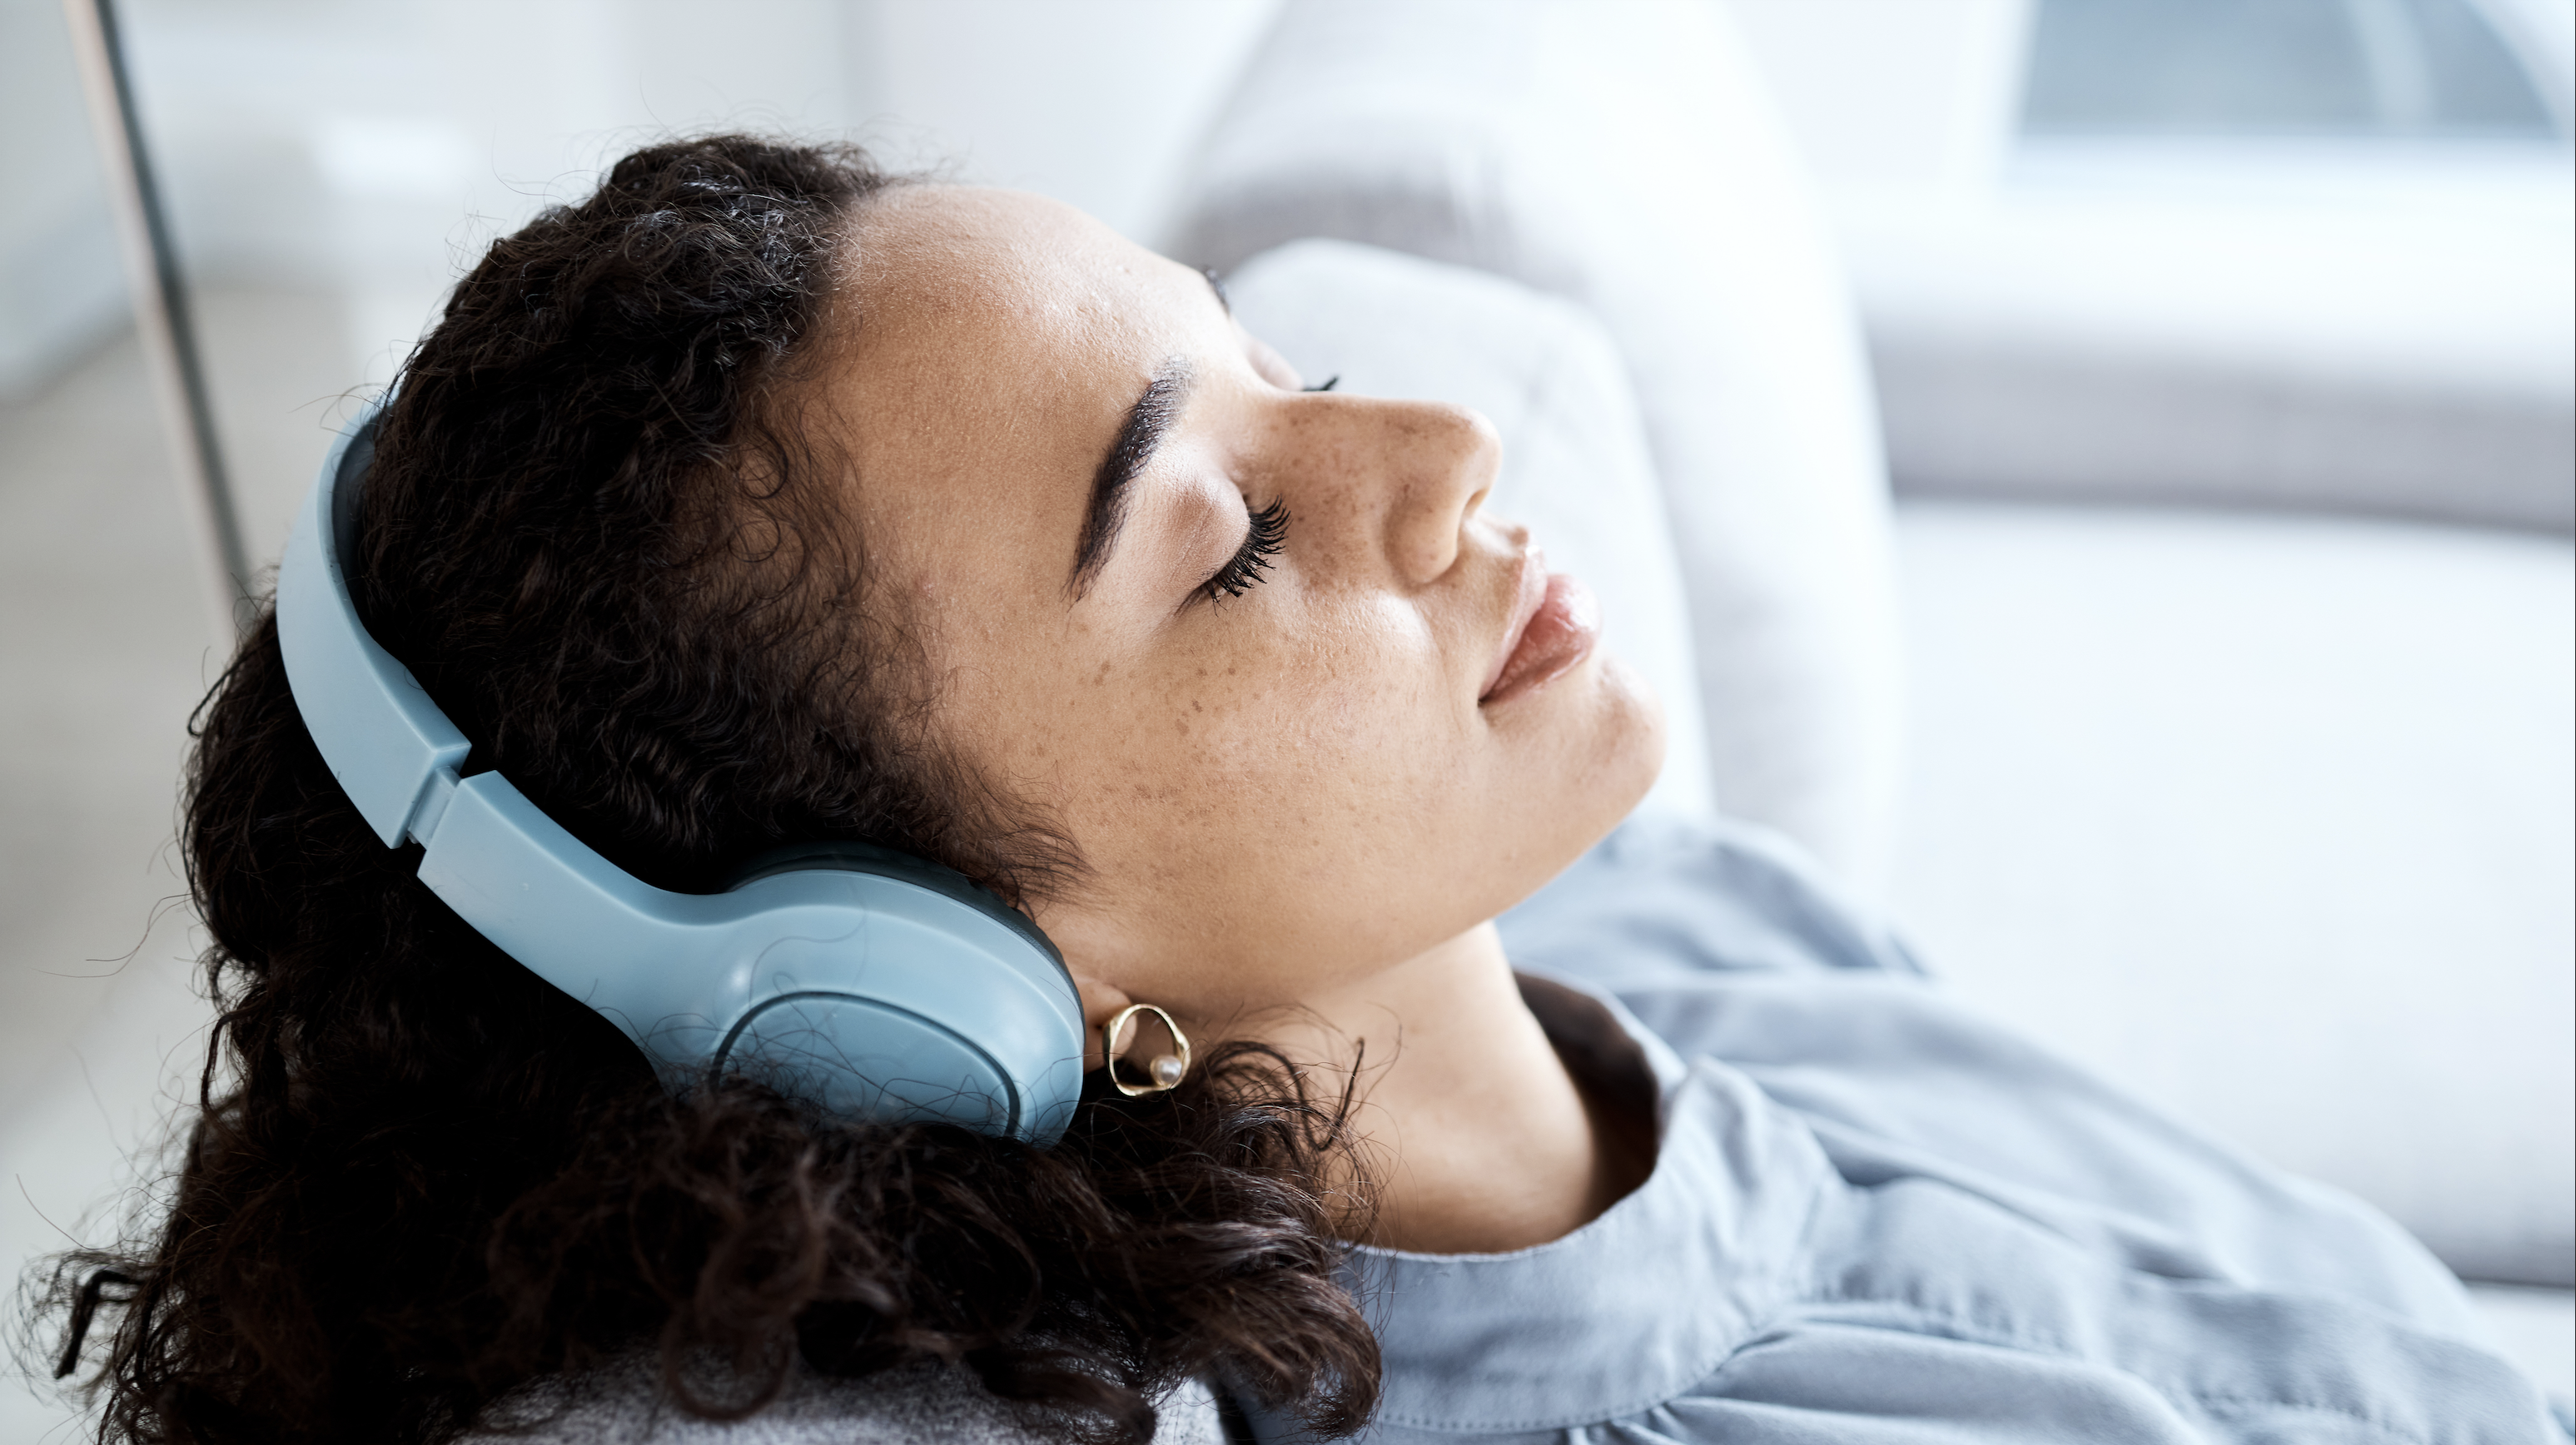 Une femme assise de manière détendue, les yeux fermés et la tête appuyée sur le dossier d'un canapé. Elle porte des écouteurs. © Adobe Stock, Rene La/peopleimages.com